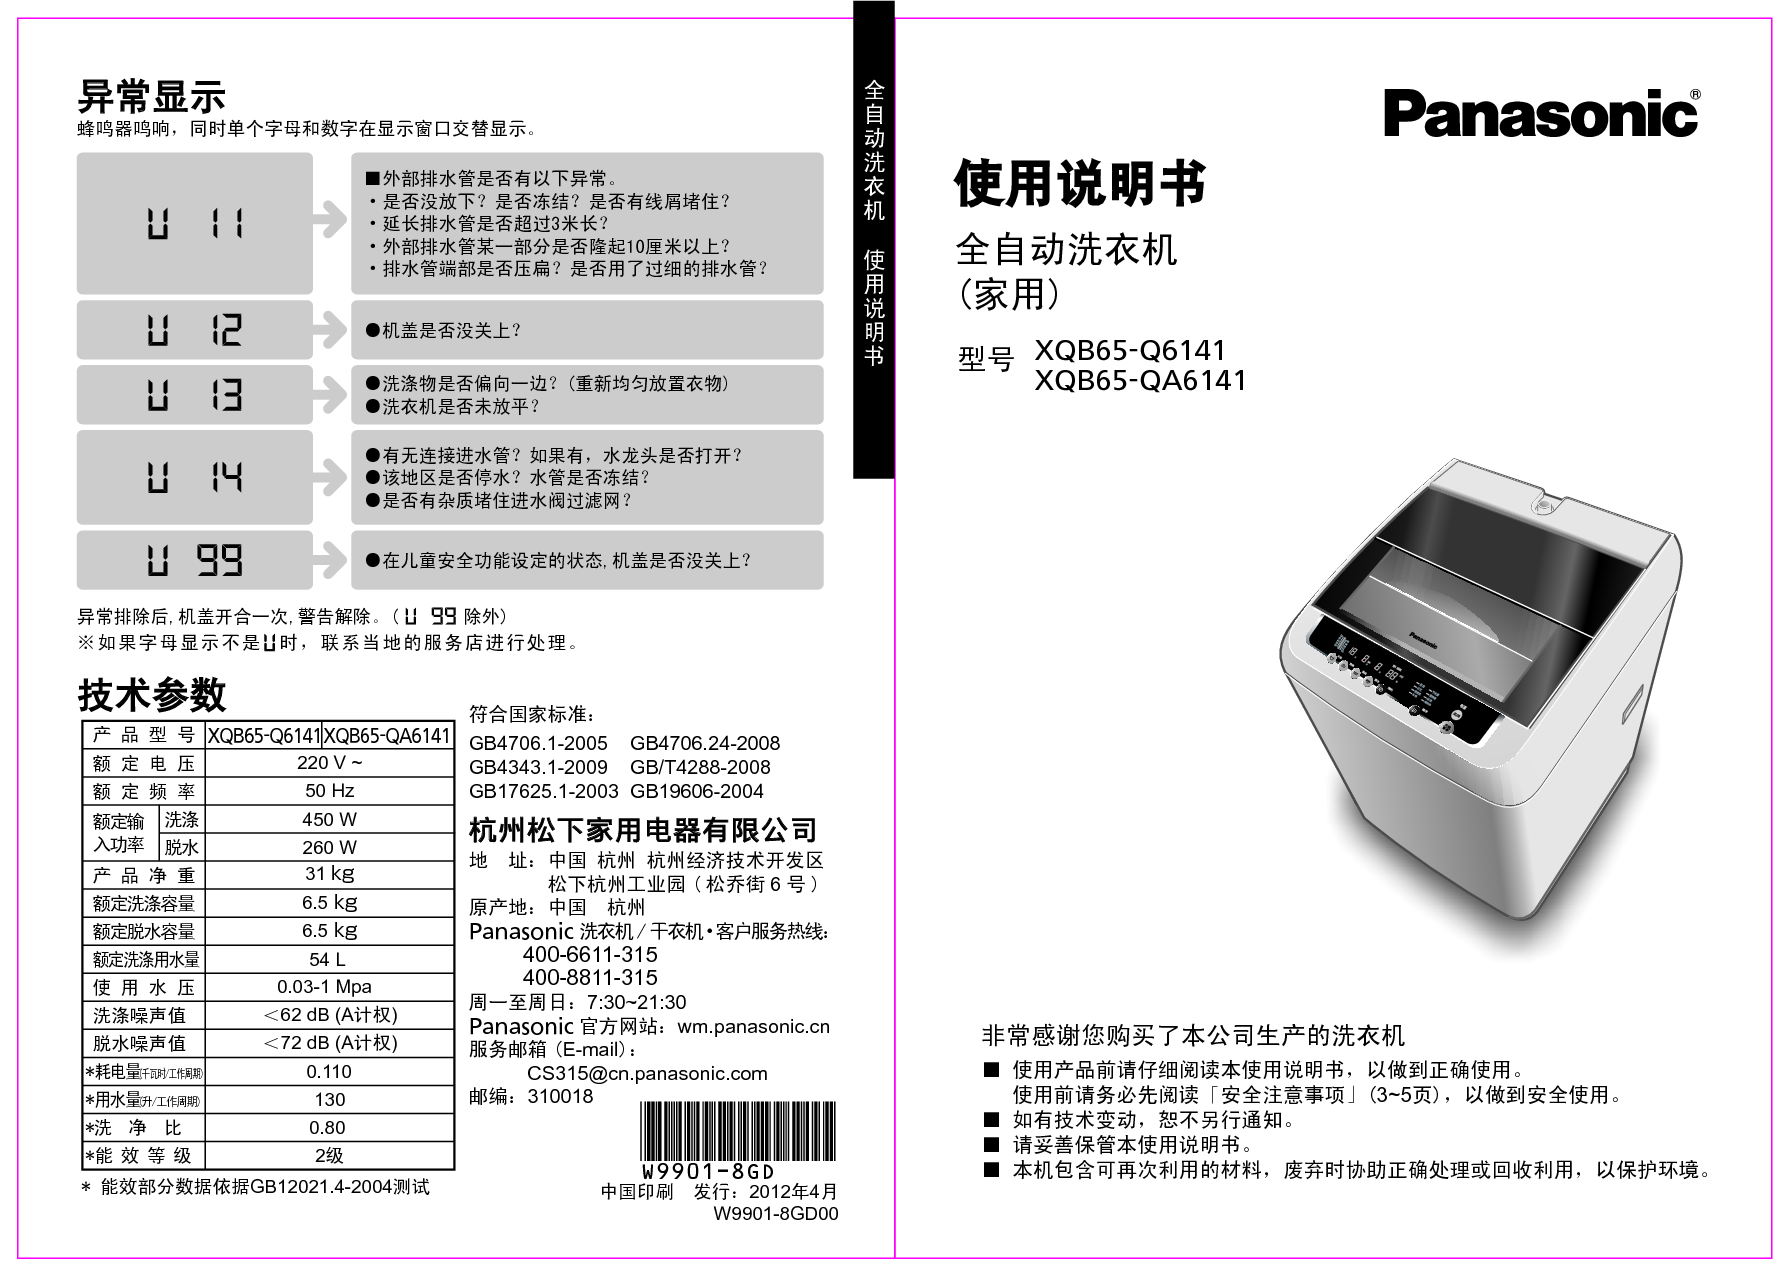 松下 Panasonic XQB65-Q6141 说明书 封面